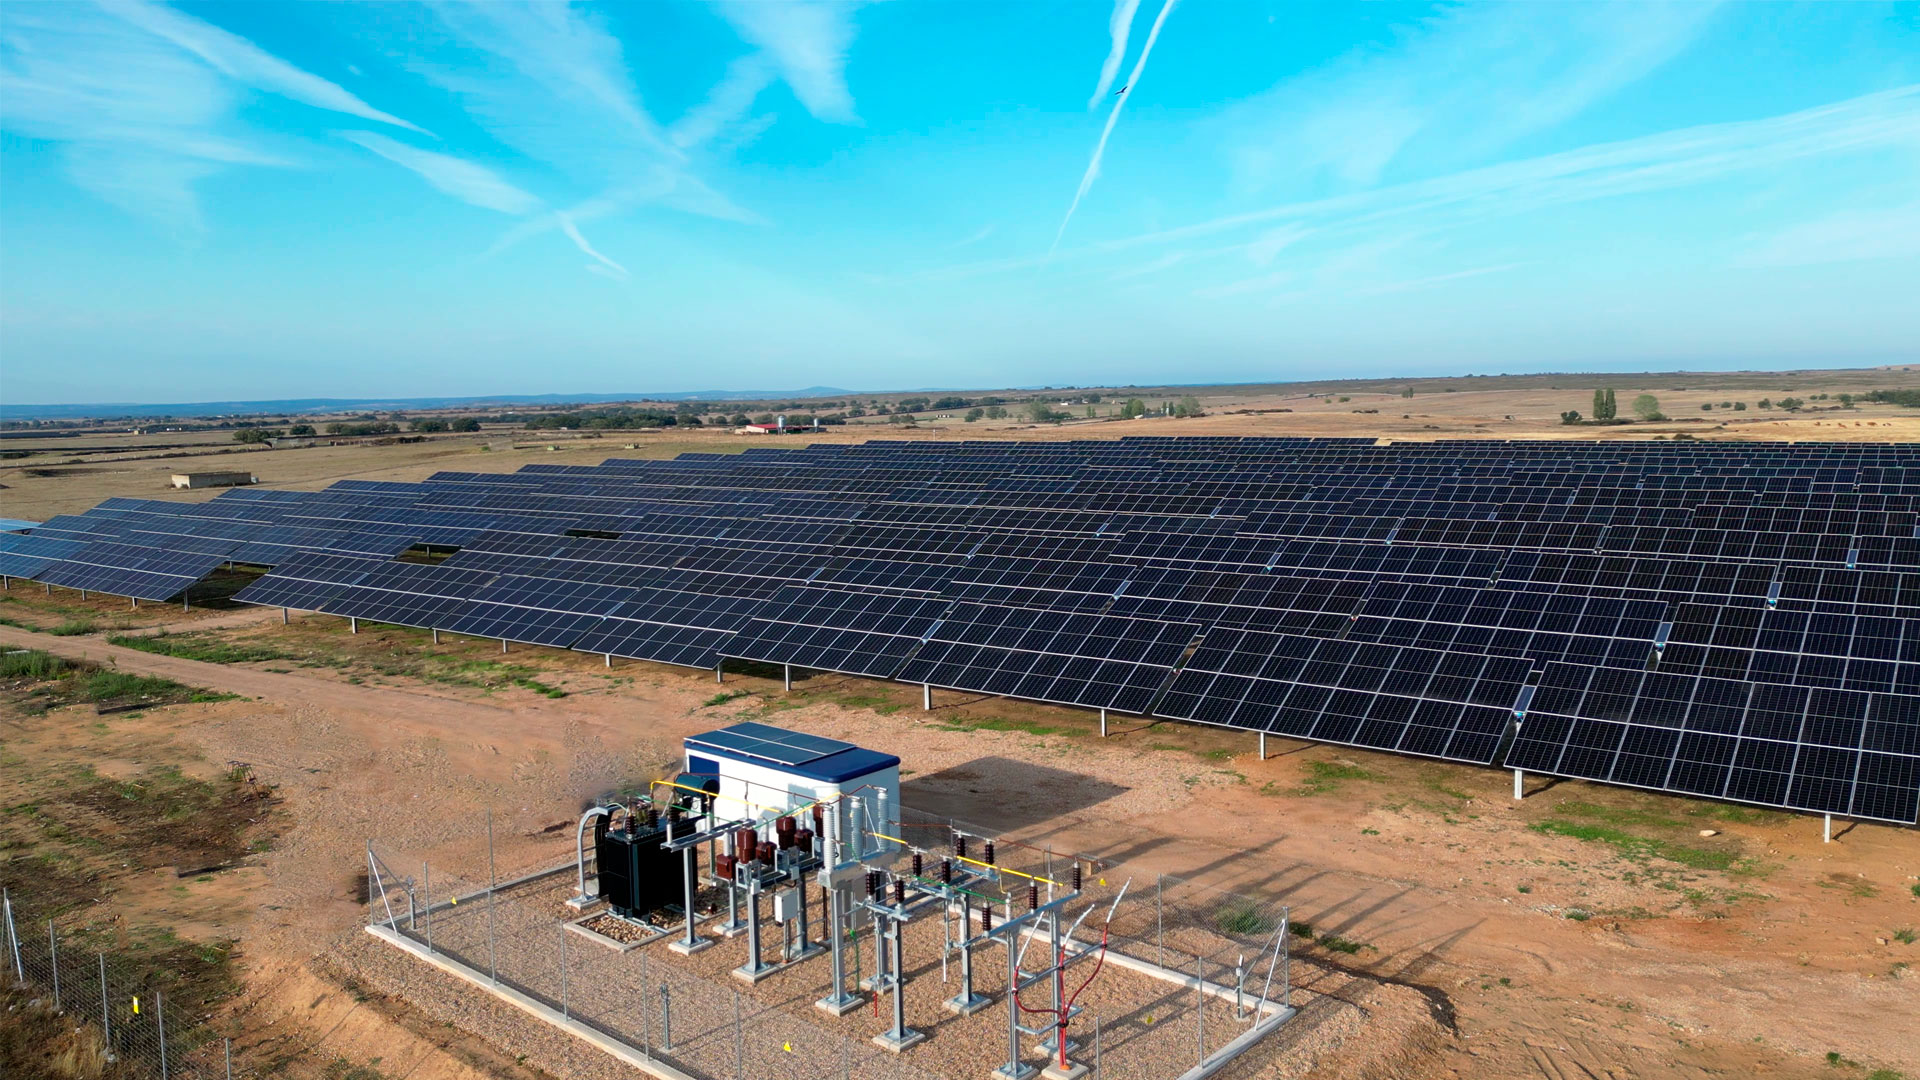 Instalación fotovoltaica de placas solares sobre suelo rural para generación de energía eléctrica.